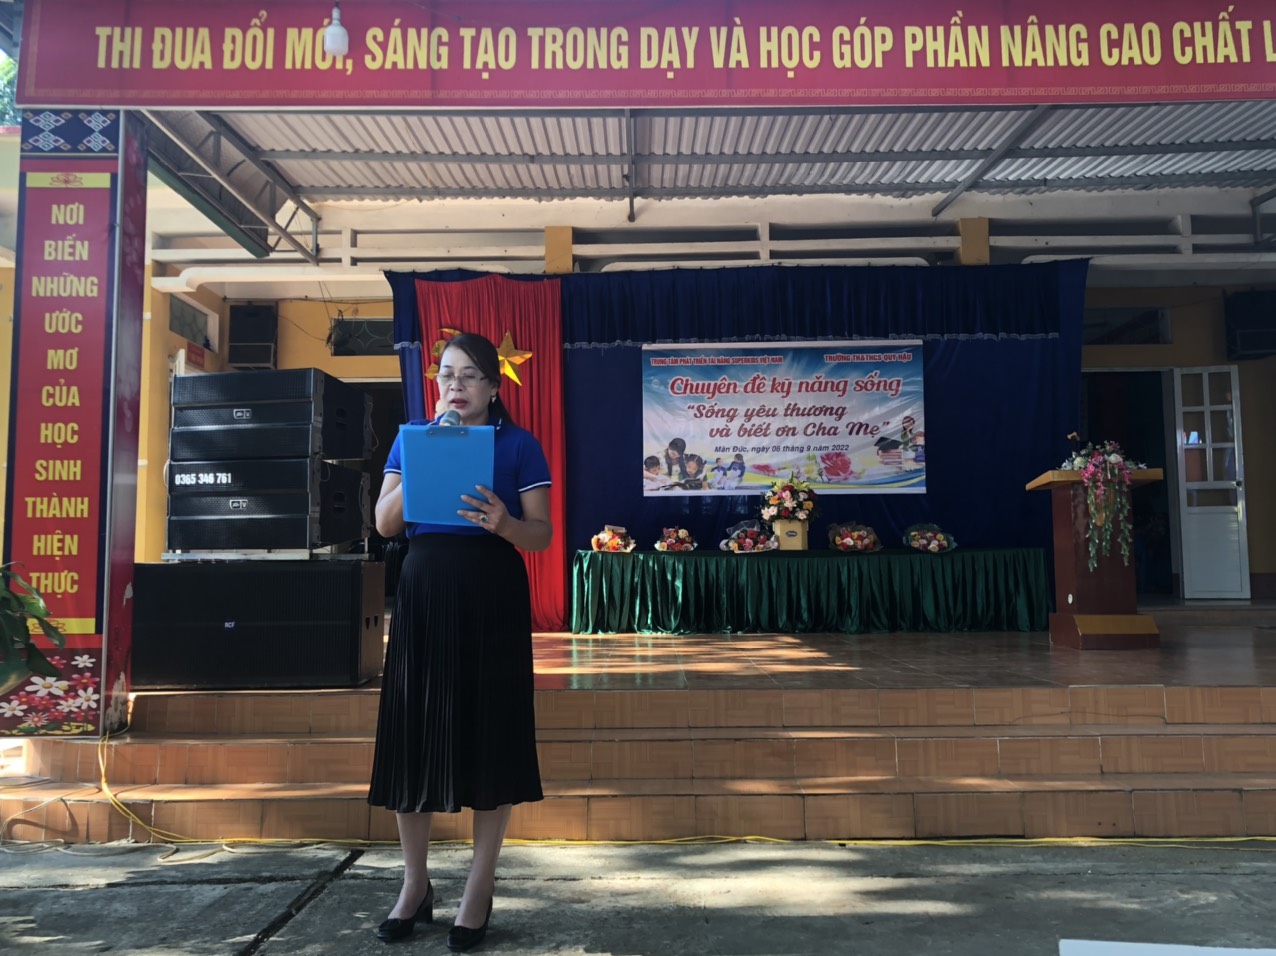 Cô  Hà Thị Hạnh hiệu trưởng nhà trường tổ chức Khai mạc chyên đề "Sống Yêu thương và biết ơn cha mẹ"